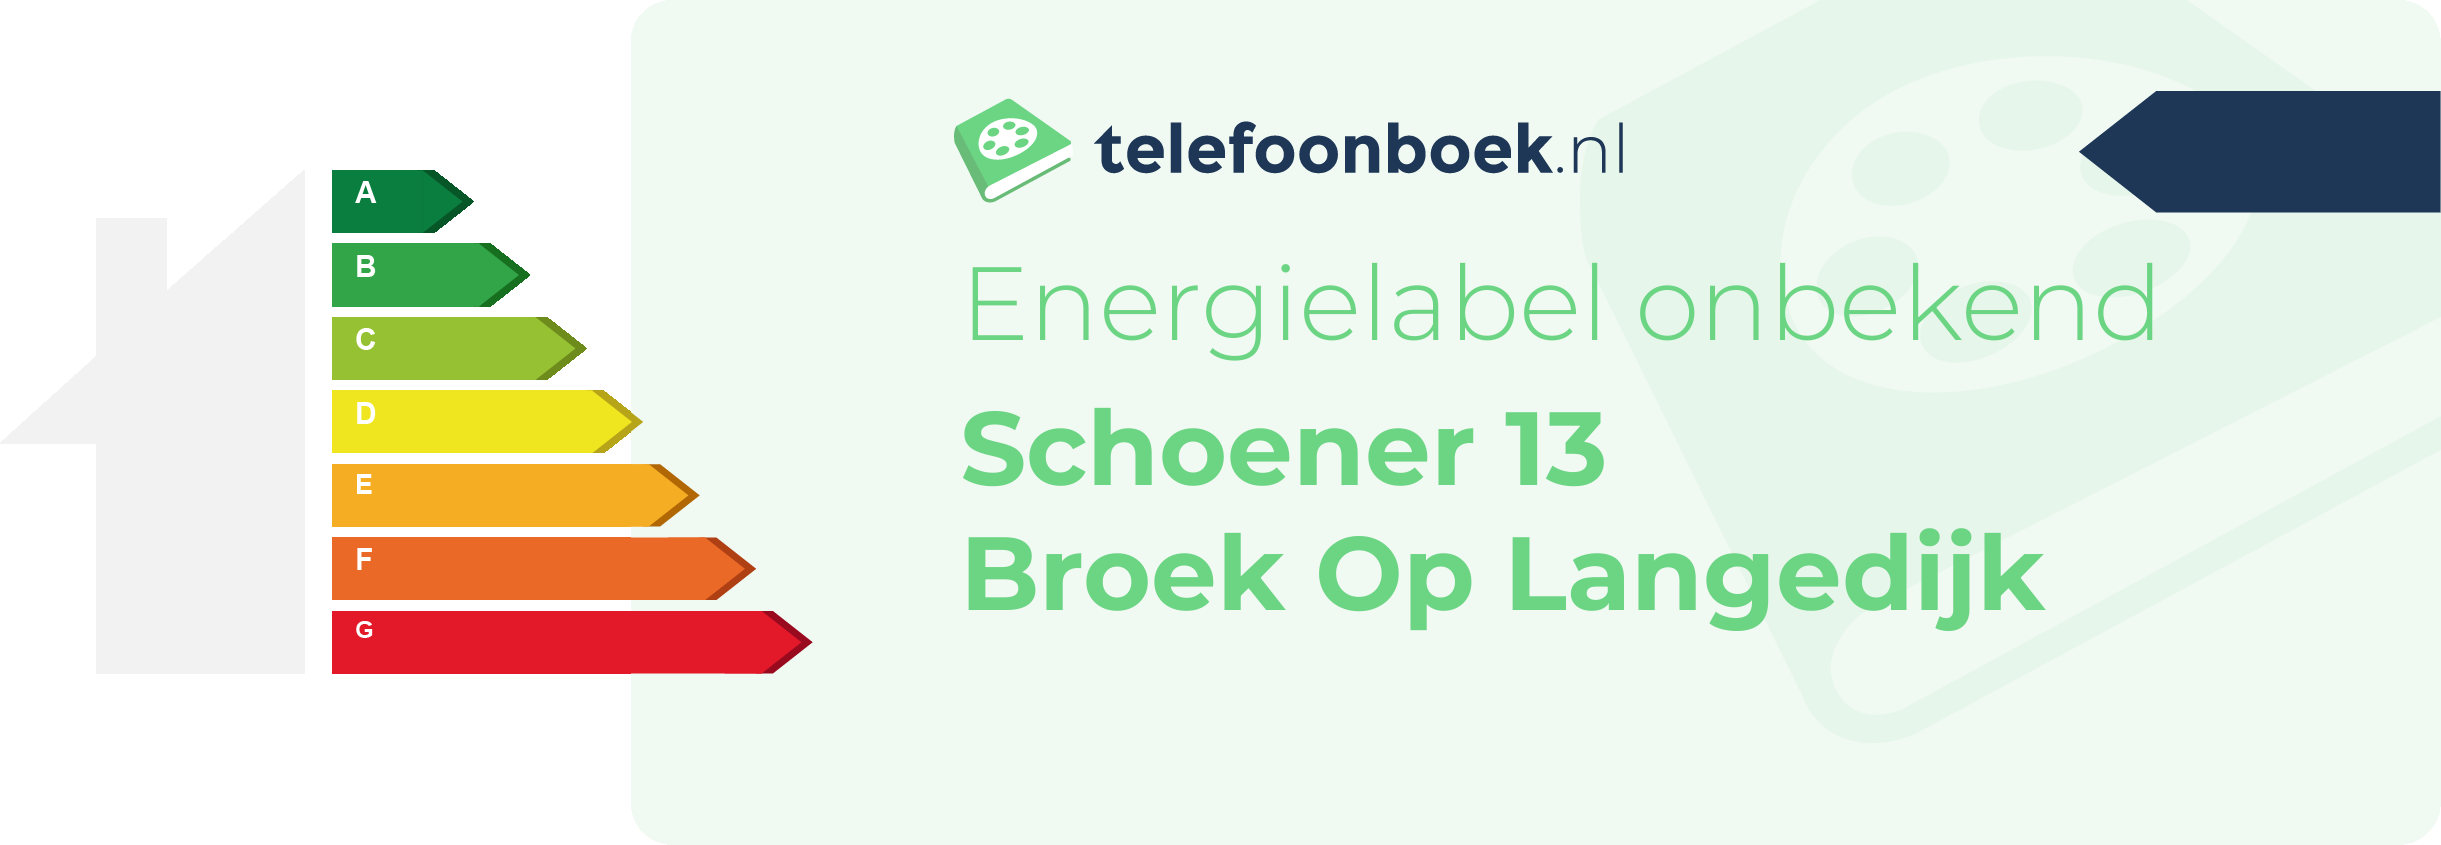 Energielabel Schoener 13 Broek Op Langedijk